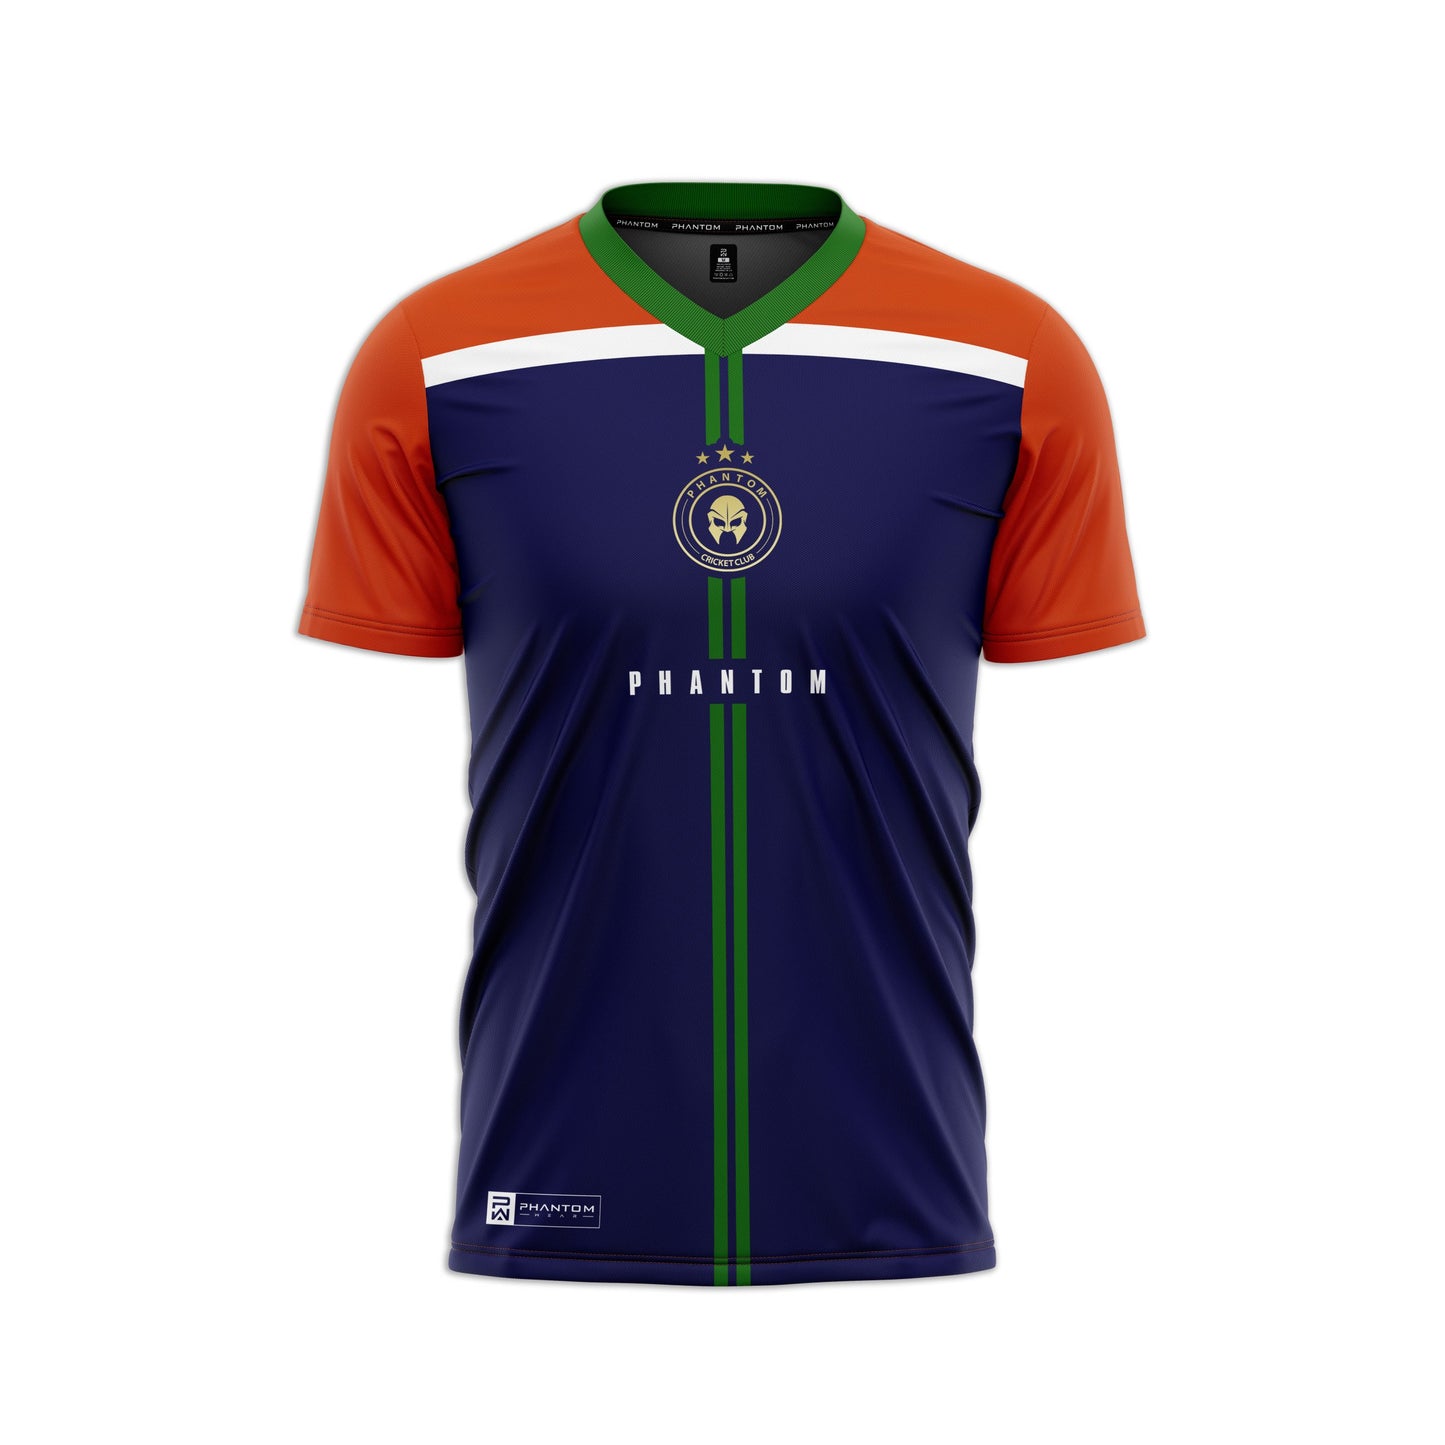 Phantom CC T-Shirt 4 – Orange Royal – Short Sleeve